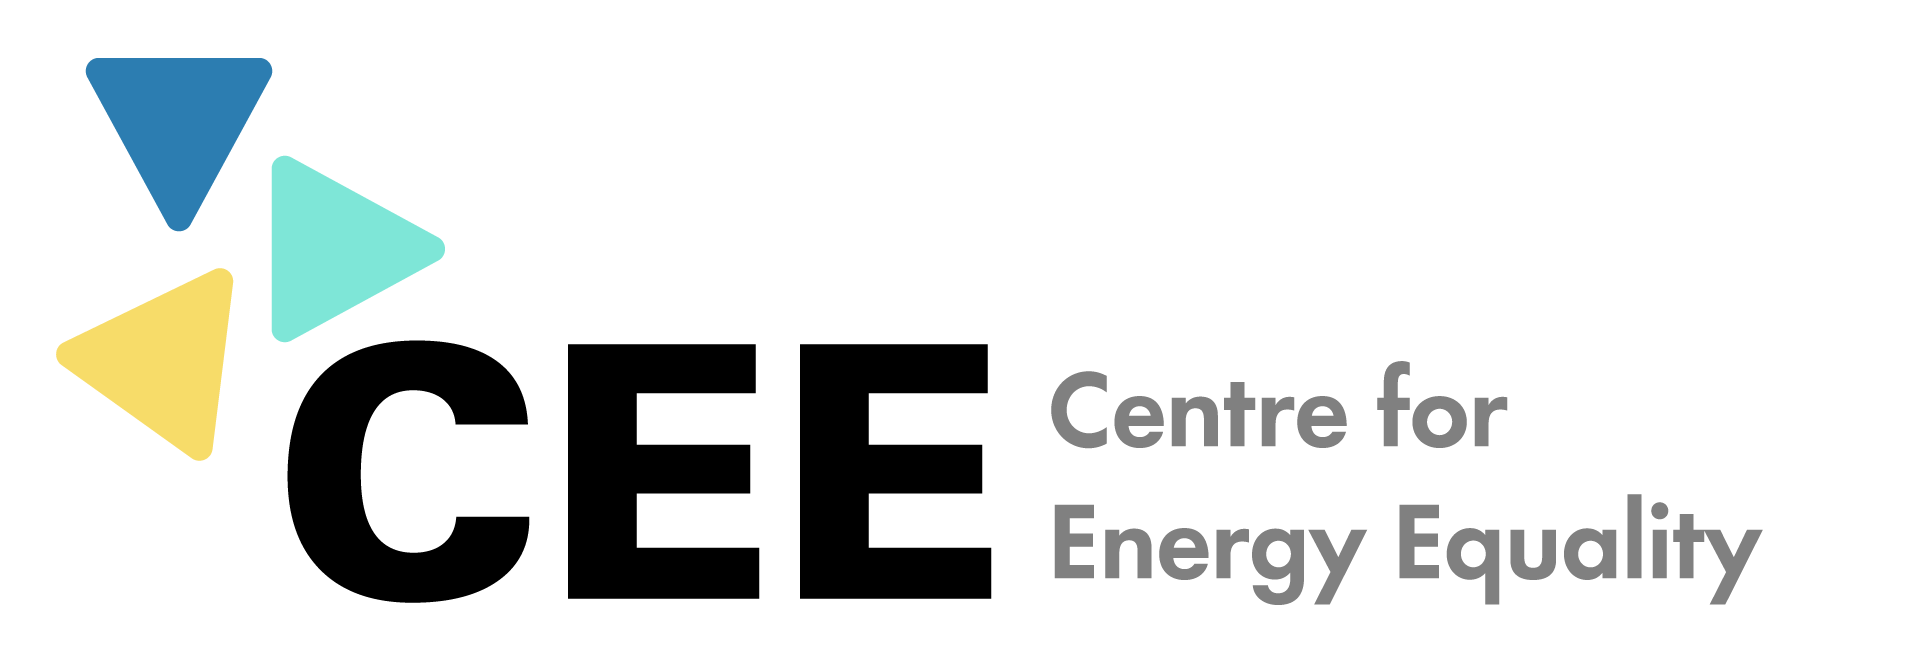 Centre for Energy Equality Logo